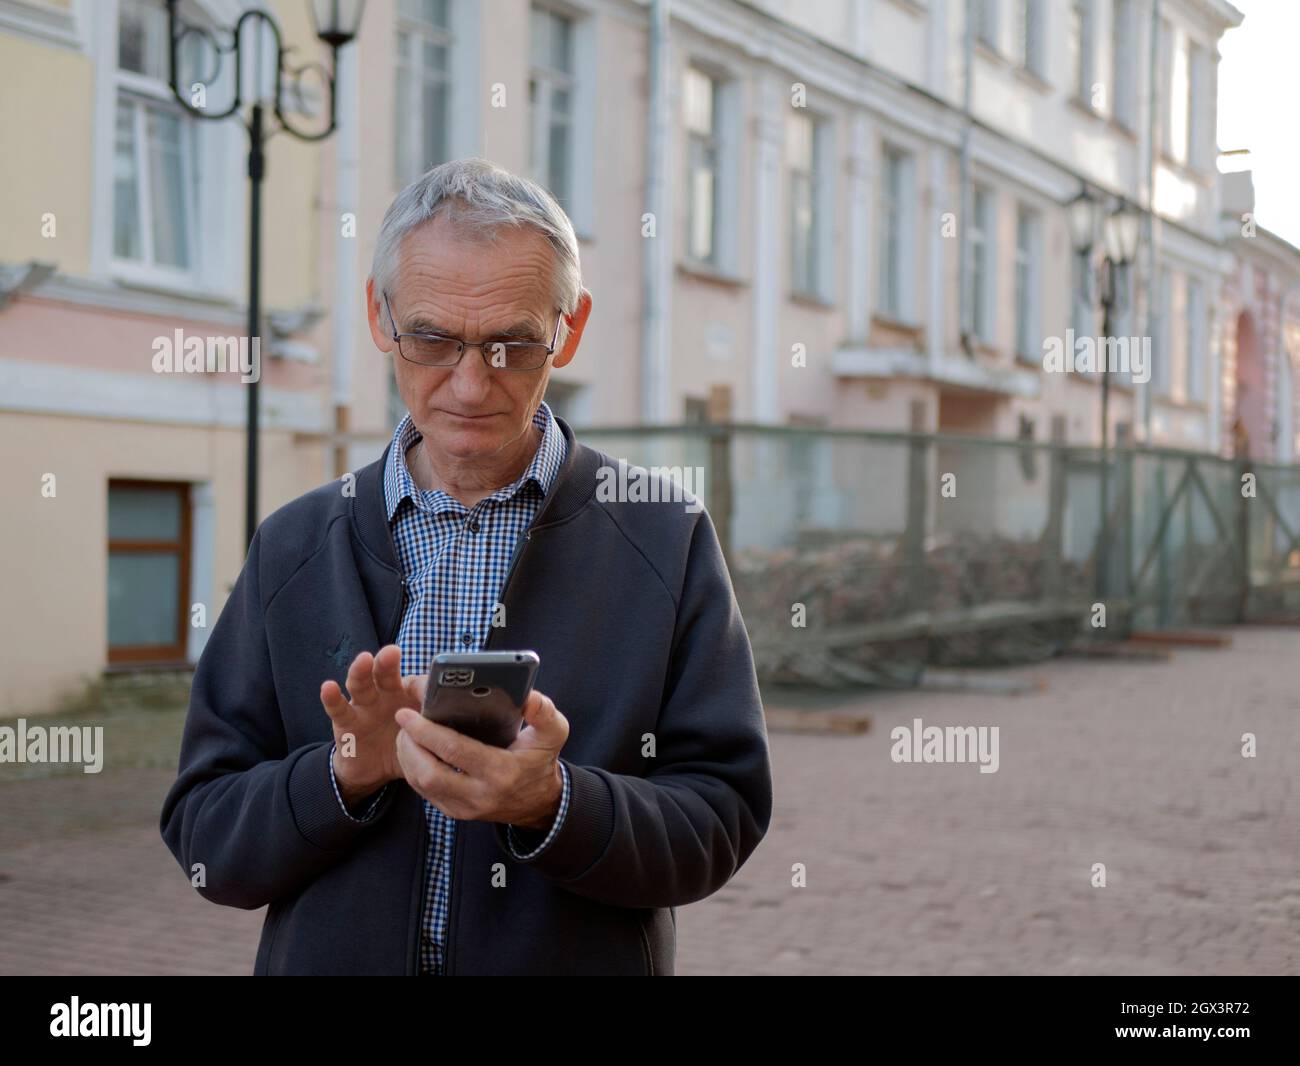 La persona anziana negli occhiali sta tenendo un telefono cellulare nelle sue mani. L'uomo anziano sta testando sullo smartphone. Il vecchio sta usando il cellulare Foto Stock